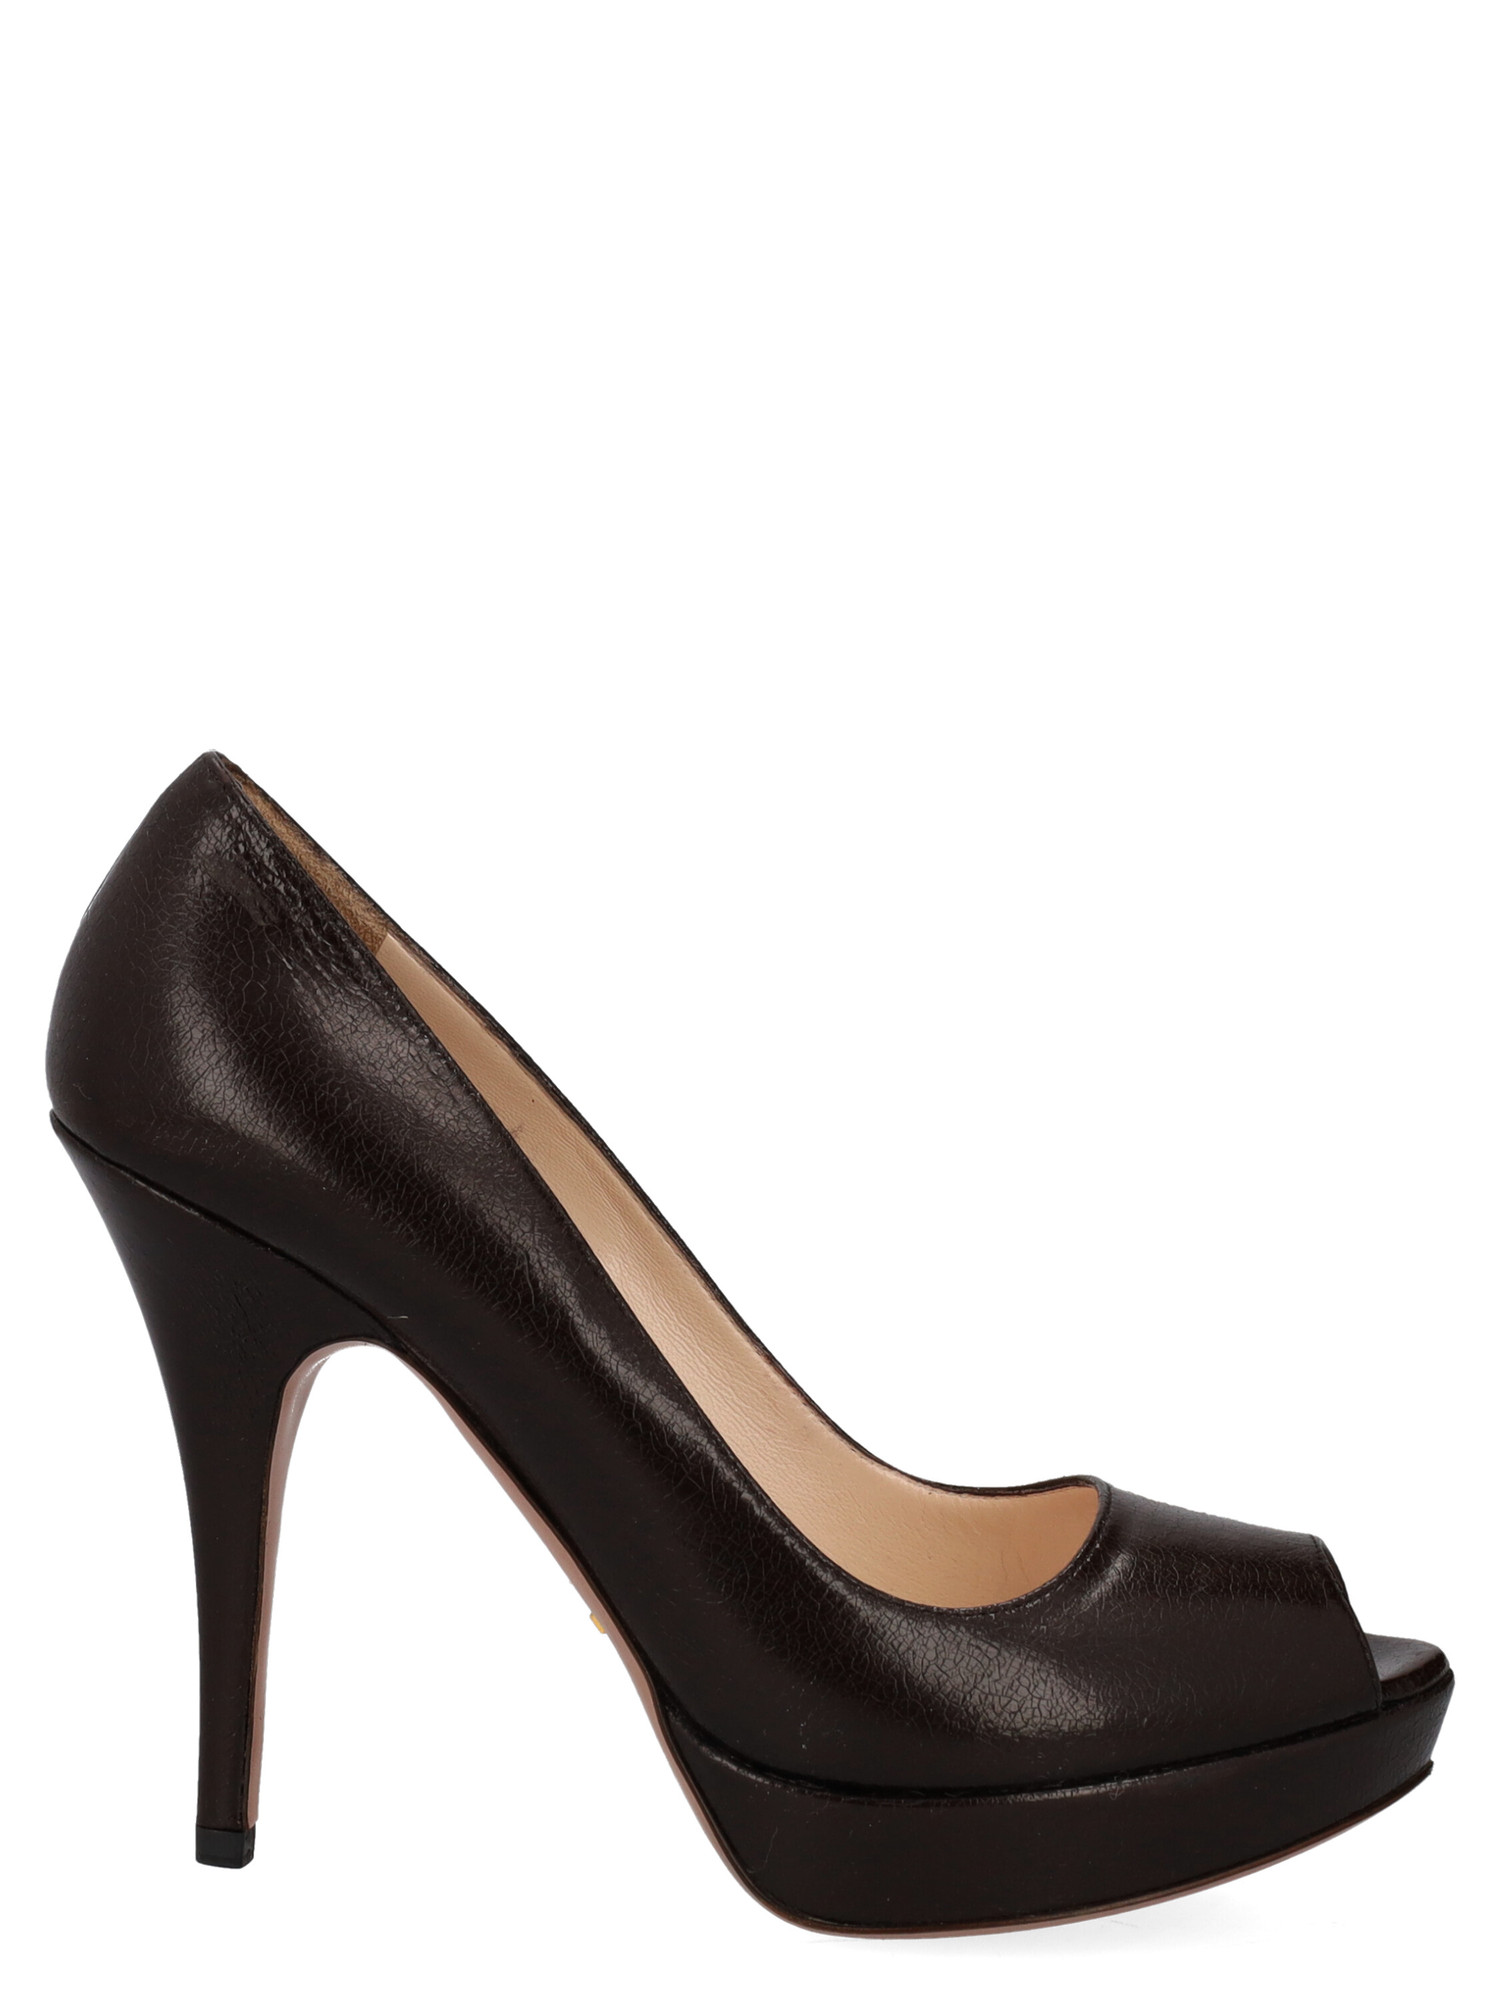 Sandales Pour Femme - Prada - En Leather Brown - Taille: IT 38 - EU 38